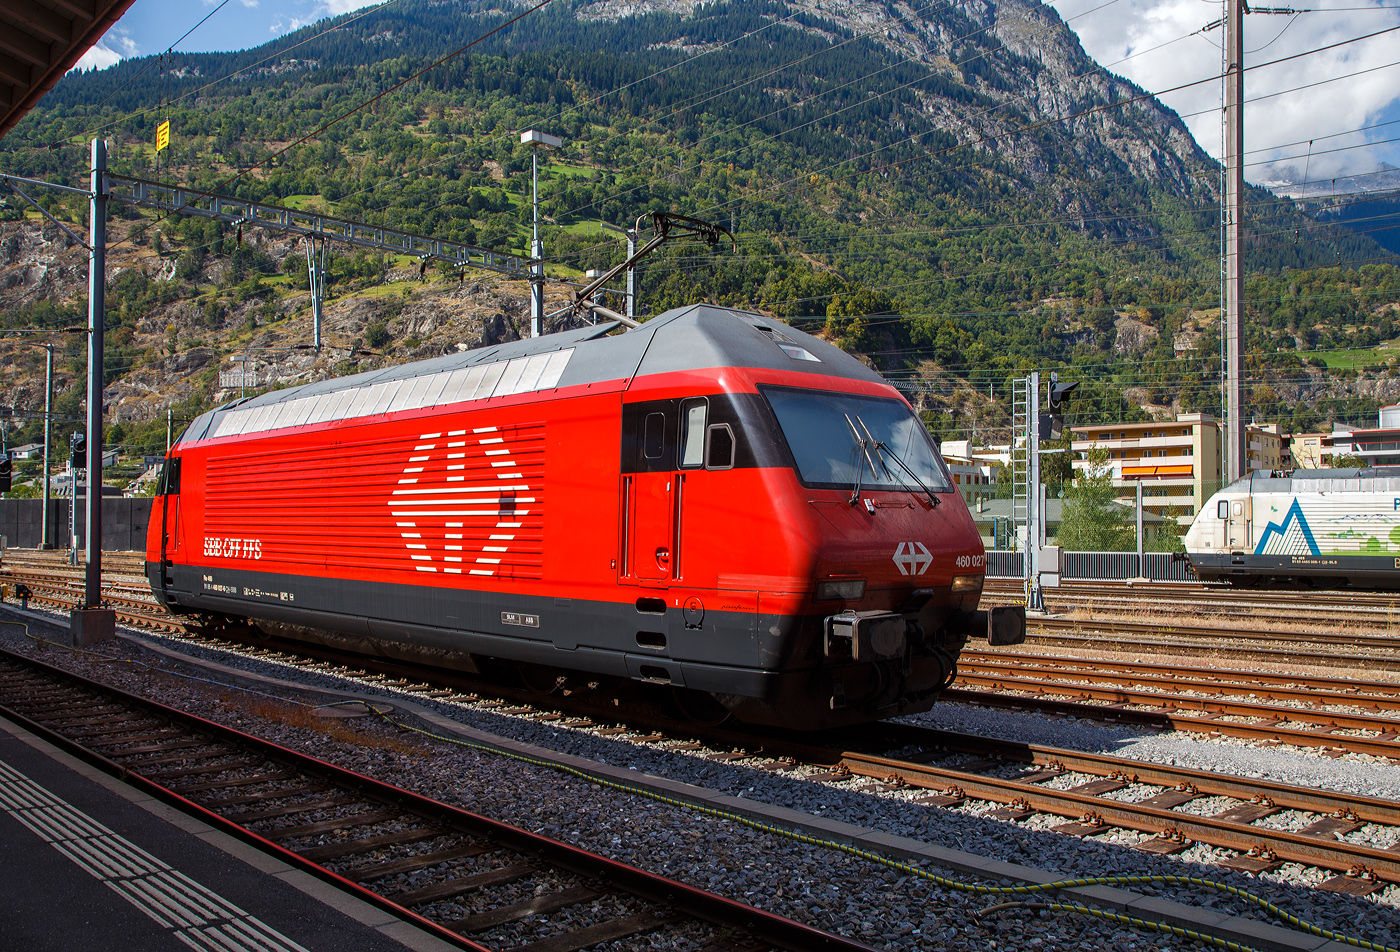 Die SBB Re 460 027-6 „Joggeli“ (91 85 4 460 027-6 CH-SBB) rangiert am 07 September im Bahnhof Brig. 

Die Lok2000 wurde 1992 von der SLM (Schweizerischen Lokomotiv- und Maschinenfabrik in Winterthur) unter der Fabriknummer 5504 gebaut, der elektrische Teil ist von der ABB (Asea Brown Boveri). Sie war 2017 durchlief sie das Modernisierungs-/Refit-Programm LOK2000 im SBB Werk Yverdon-les-Bains (VD).So sollen die Loks fit für die weitere 20 Jahre sein, zudem sollen so durch alle 119 Re 460 Lokomotiven der SBB etwa 30 Gigawattstunden Energie eingespart werden. 

Modernisierungs-/Refit-Programm der LOK2000 (Re 460):
Zwischen 2015 und November 2022 unterzog die SBB alle ihrer 119 Re 460 Lokomotiven (LOK2000) einem Refit-Programm (Modernisierung) im SBB Werk Yverdon-les-Bains (VD). Dabei wurden unter anderem die auf dem GTO-(Thyristor)-Halbleiter-Technologiestand der 1990er-Jahre basierende Leistungselektronik (GTO- Traktionsumrichter) durch IGBT-Traktionsumrichter (insulated-gate bipolar transistor) der neuesten Generation von ABB ersetzt, welche die Fahrmotoren mit Strom speisen und Bremsenergie zurückgewinnen. Die SBB hat damit, in Zusammenarbeit mit der ABB, die gesamte Flotte Re 460 modernisiert und hat diese auf den neuesten Stand der Antriebstechnik gebracht. Die gesamte Flotte spart dank neuen Traktionsumrichtern und weiteren technischen Optimierungen jedes Jahr rund 30 Gigawattstunden Energie ein, das sind fünf Gigawattstunden mehr als ursprünglich erwartet. So werden auch ca. 3,3 Millionen Franken Energiekosten jährlich einsparen. Die Energieeinsparungen entsprechen dem durchschnittlichen Stromverbrauch von 10.000 Schweizer Haushalten. Die Umrüstung auf modernste IGBT-Technologie und mit Wasser statt Öl betriebene Kühlsysteme der Umrichter ermöglicht eine Senkung des Energieverbrauchs und sorgt für einen ökologischeren und sicheren Bahnbetrieb.

TECHNISCHE DATEN der Re 460:
Nummerierung:  Re 460 000–118
Anzahl: 119
Baujahre: 1991–1996
Hersteller: SLM - Winterthur / ABB (Asea Brown Boveri)
Design: Pininfarina
Hersteller Lokkasten: teilweise (30 Stück) Krauss-Maffei (München)
Spurweite: 1.435 mm (Normalspur)
Achsformel: Bo'Bo'
Länge über Puffer: 18.500 mm
Höhe: 4.300 mm
Breite: 3.000 mm
Drehzapfenabstand: 11.000 mm
Achsabstand im Drehgestell:  2.800 mm
Laufraddurchmesser: 1.110 mm (neu)
Dienstgewicht: 84,0 t
Höchstgeschwindigkeit:  230 km/h (Betrieblich 200 km/h)
Dauerleistung:  6.100 kW / 8.300 PS
Anfahrzugkraft: 300 kN
Dauerzugkraft: 275kN
Stromsystem: 15 kV, 16,7 Hz (über Oberleitung)
Stromabnehmern: 2 Faiveley- Einholmstromabnehmer (ersetzt den zuvor verwendeten WBL-85)
